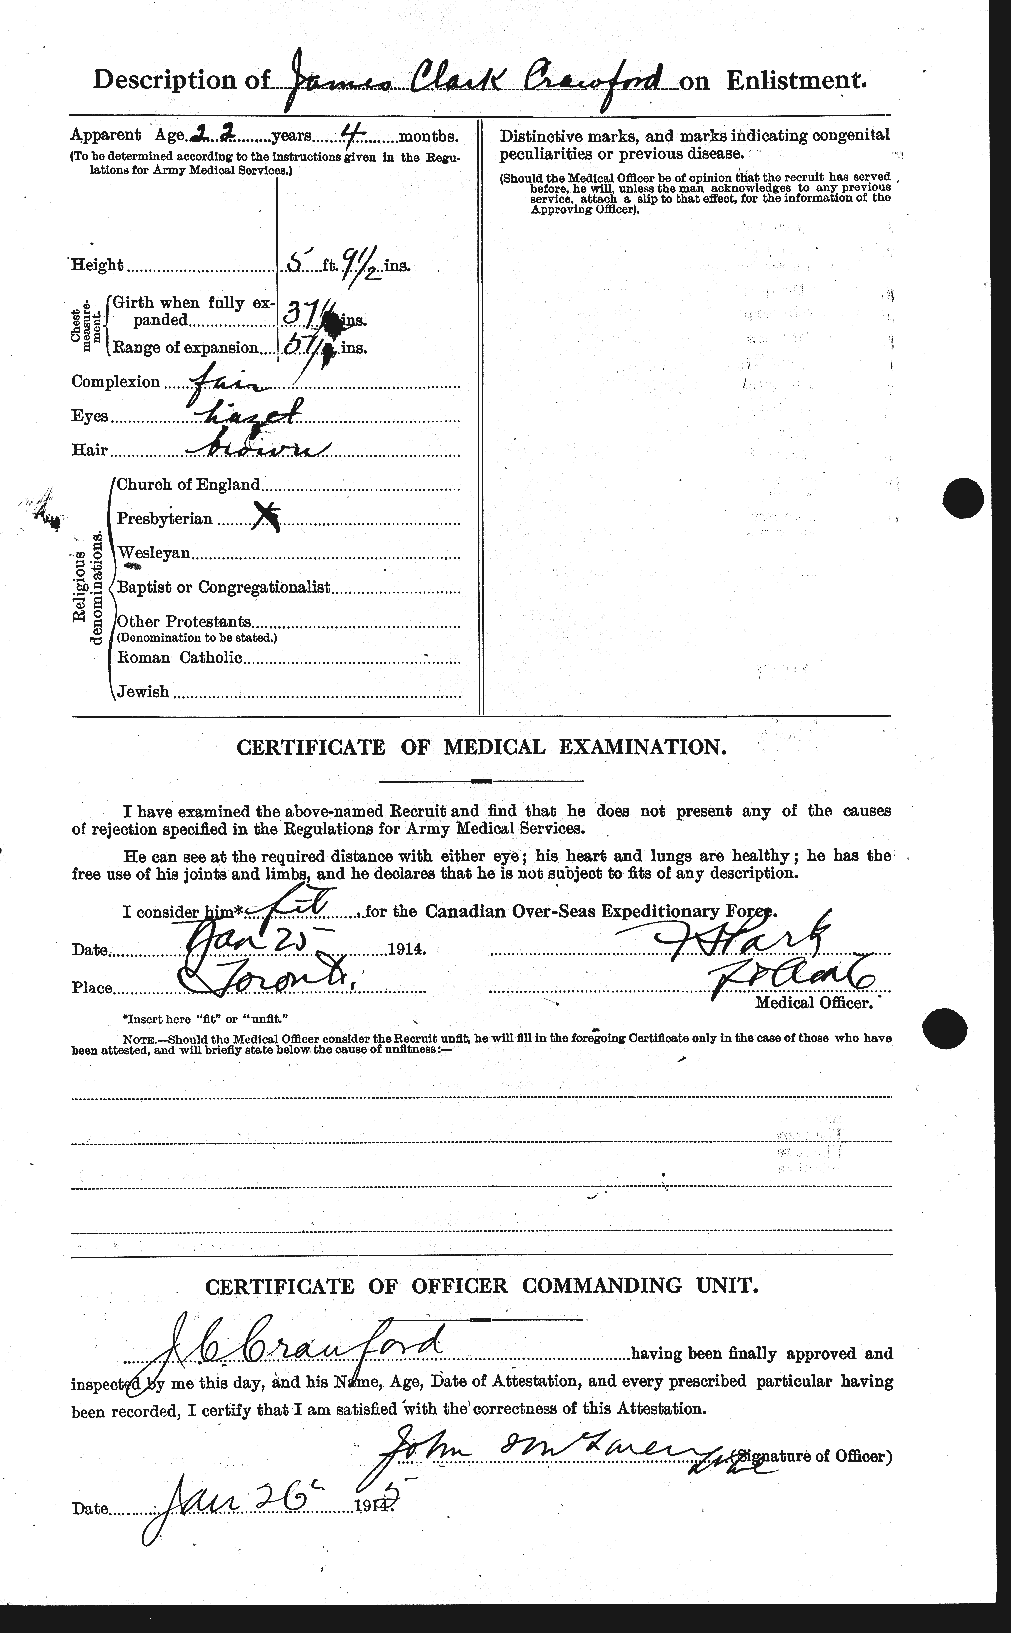 Dossiers du Personnel de la Première Guerre mondiale - CEC 062757b